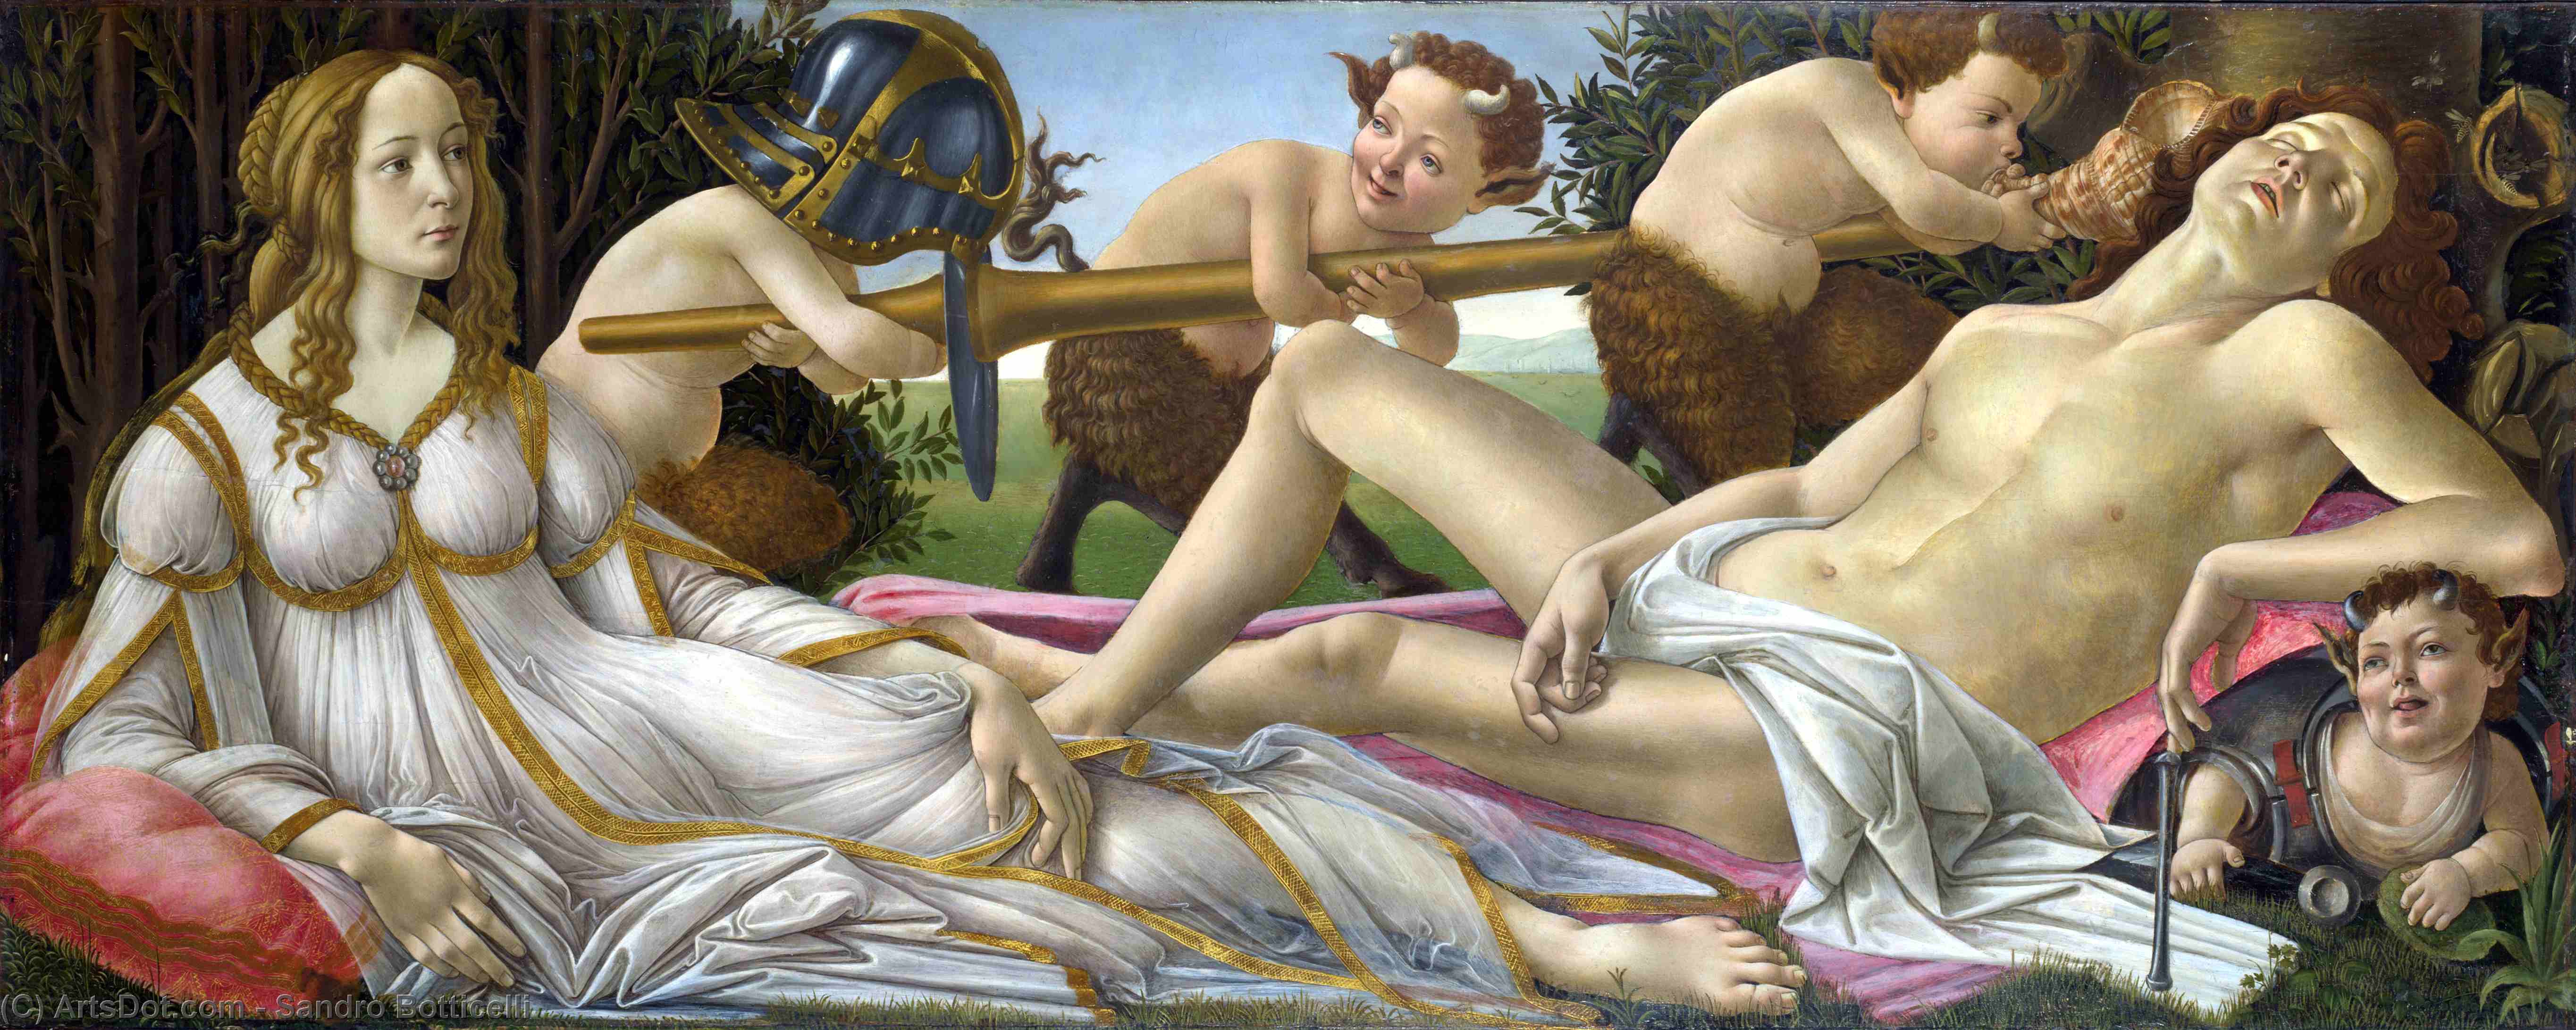 Ordinare Riproduzioni Di Quadri Venere e Marte, 1483 di Sandro Botticelli (1445-1510, Italy) | ArtsDot.com